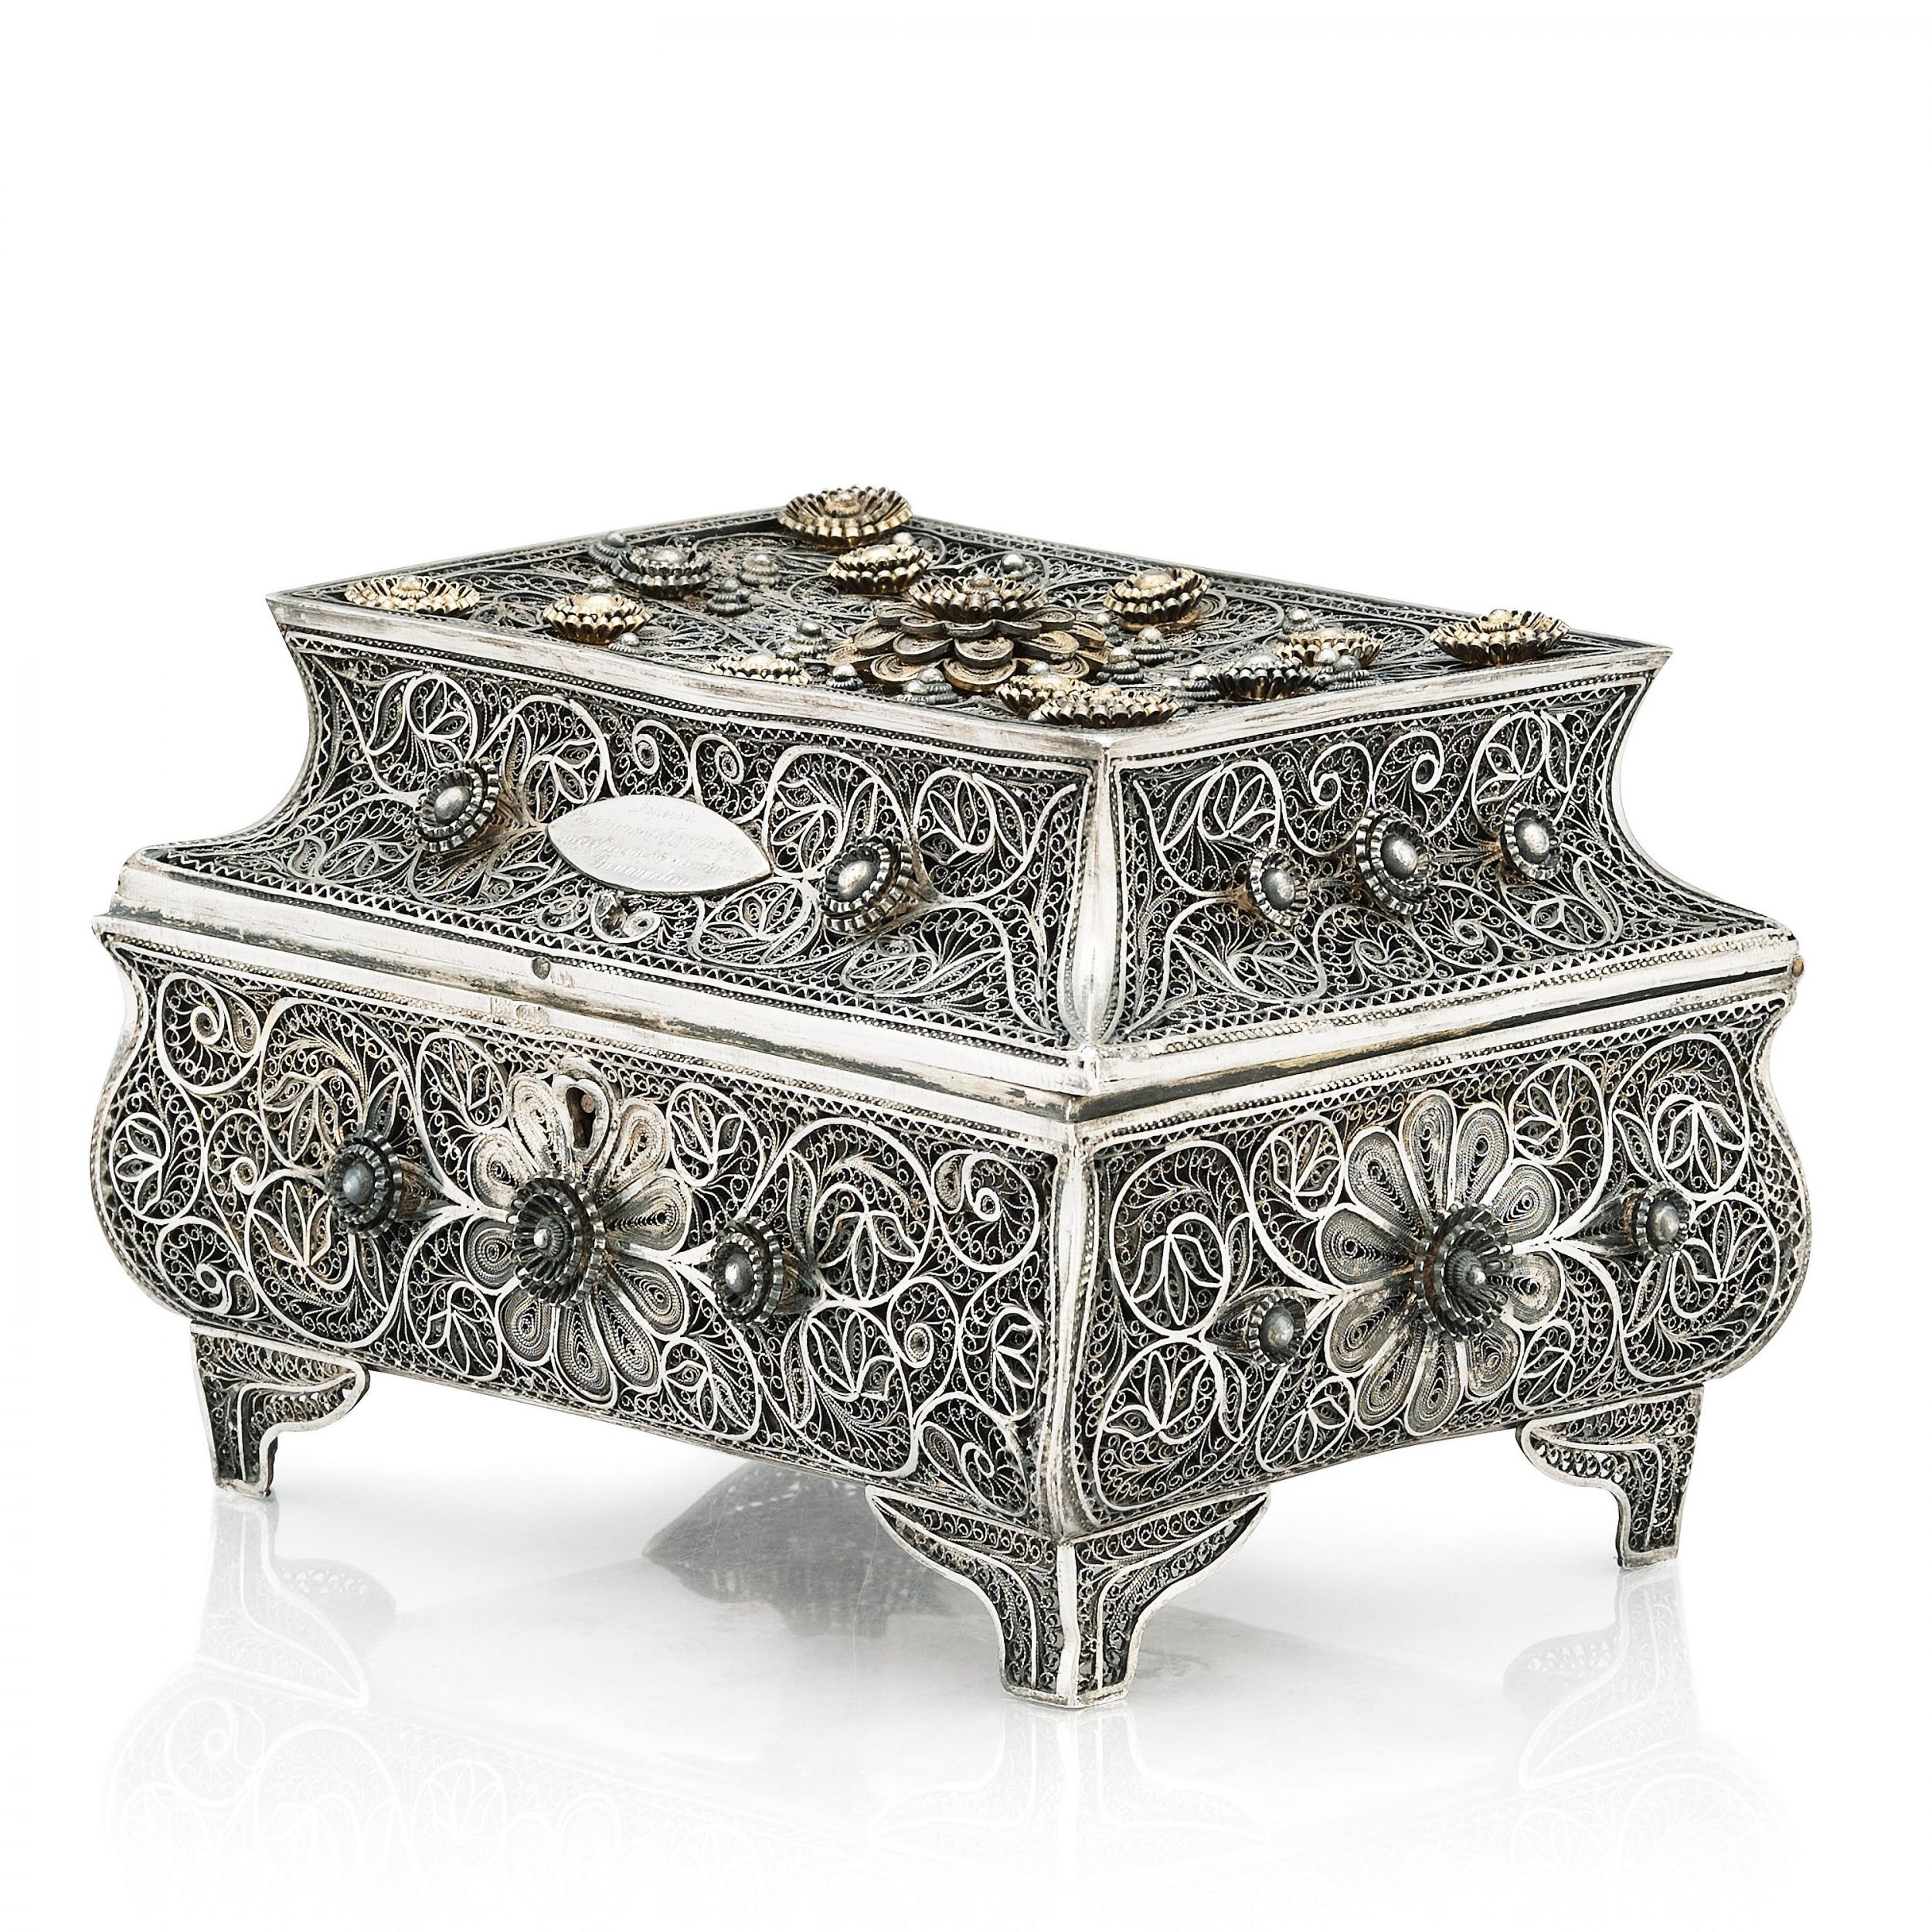 Silver-filigree-box-from-the-19th-century-Odessa-Russian-Empire-1898-1908